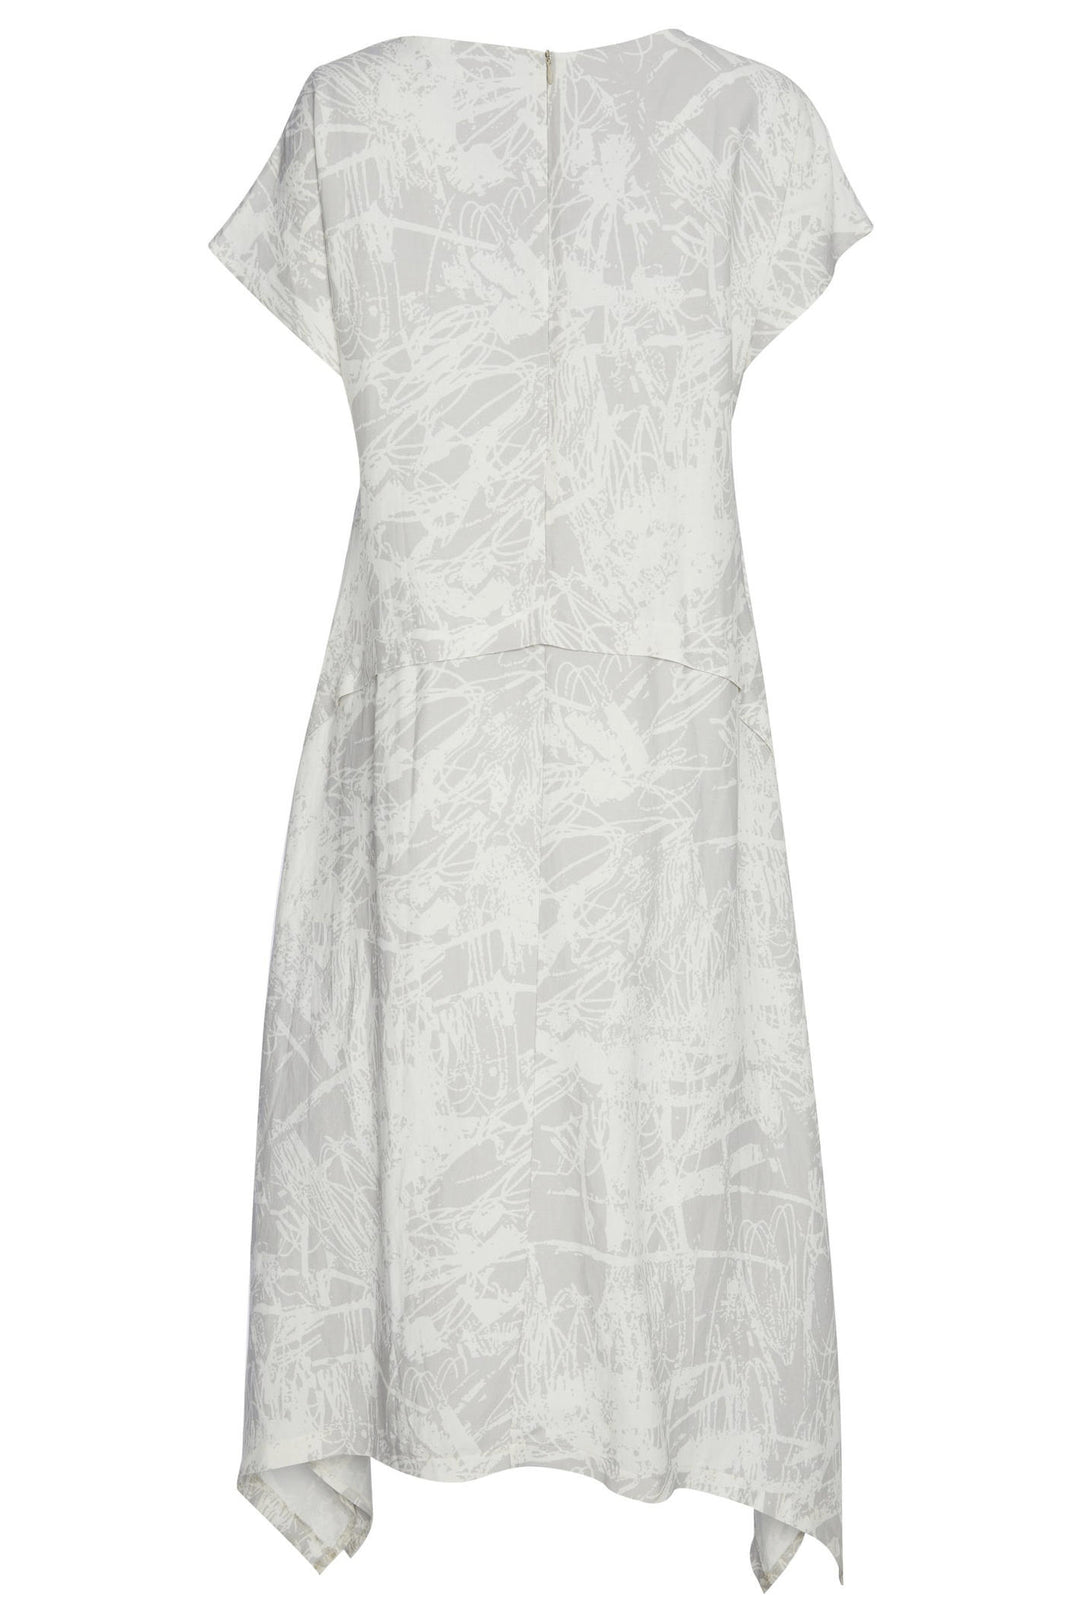 Naya NAS23 250 Stone & White Print Dress